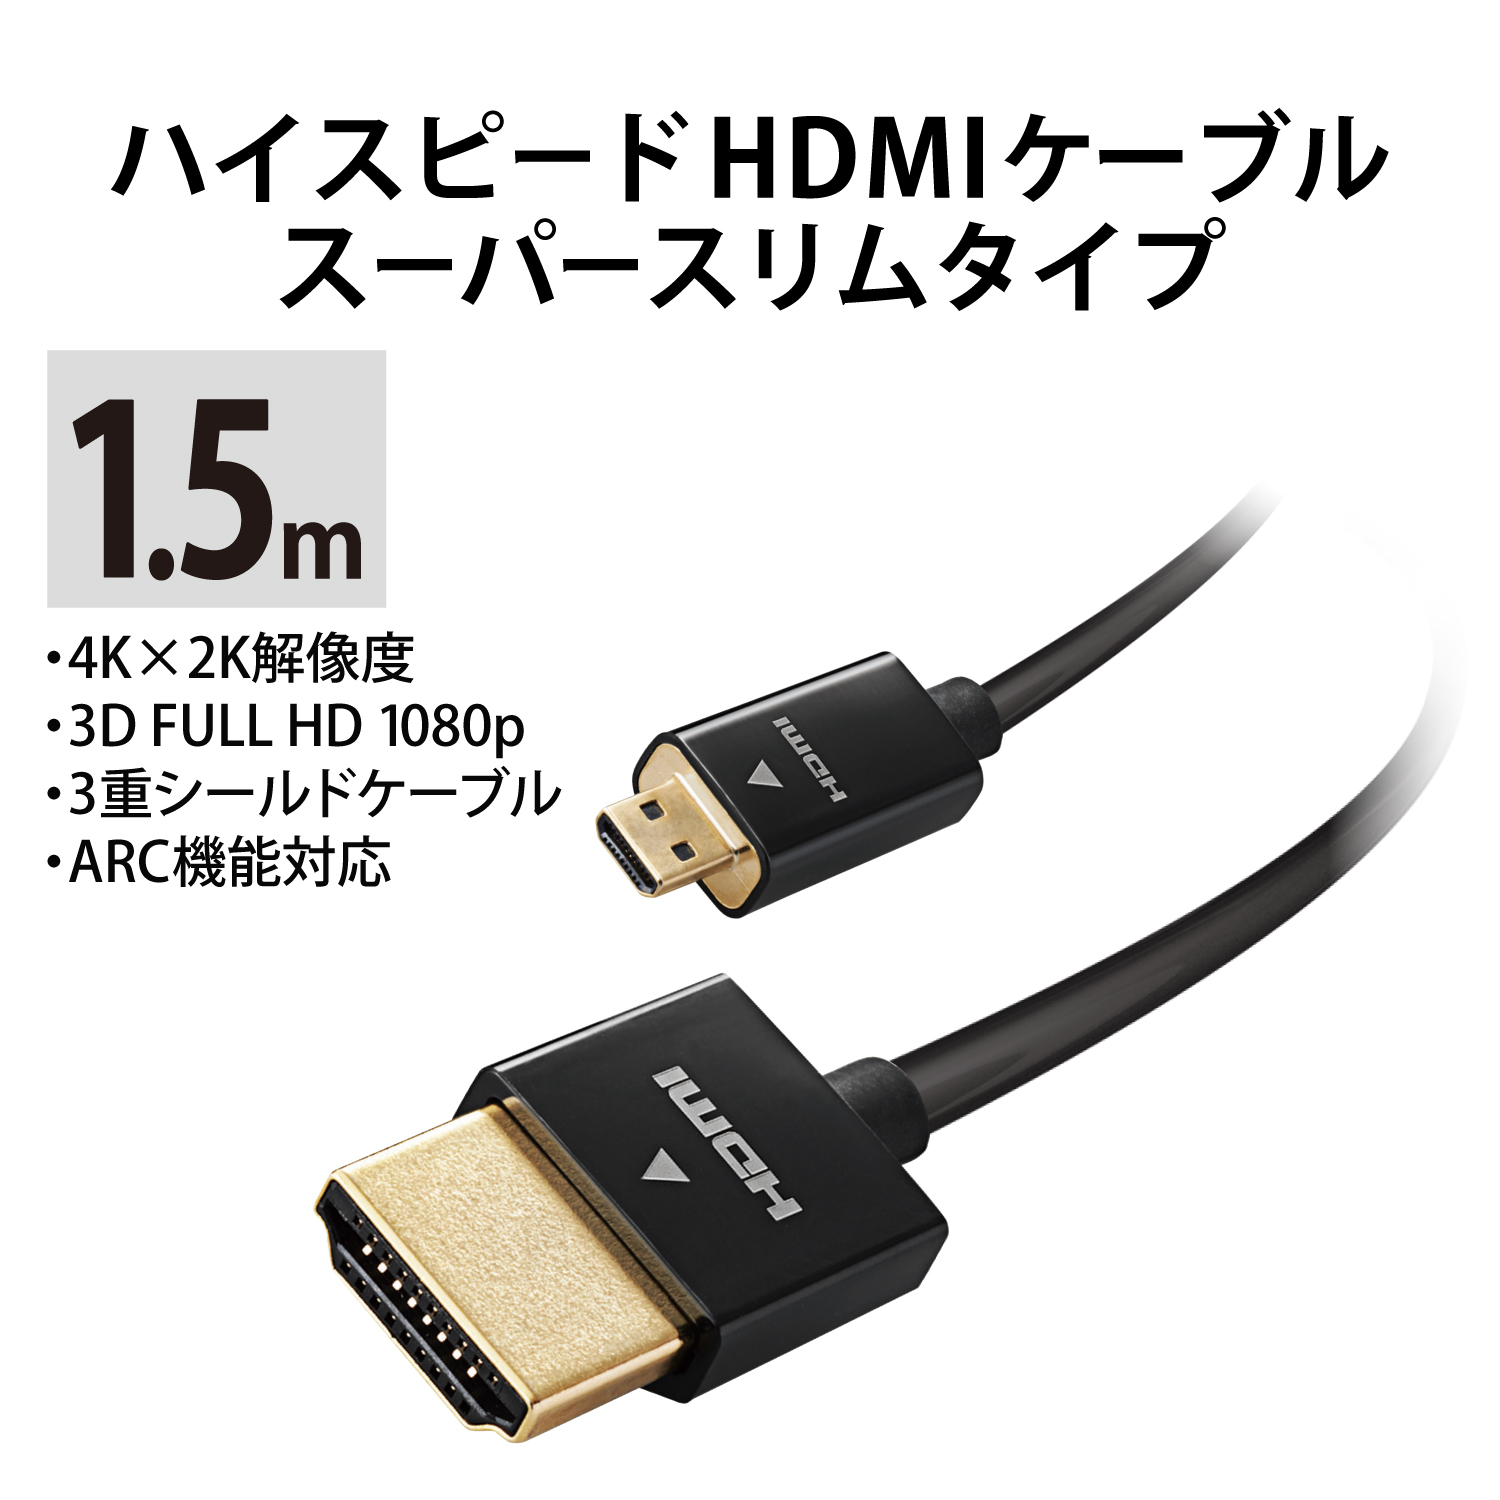 エレコム HDMI ケーブル 2m 4K×2K対応 スーパースリム 環境に配慮した